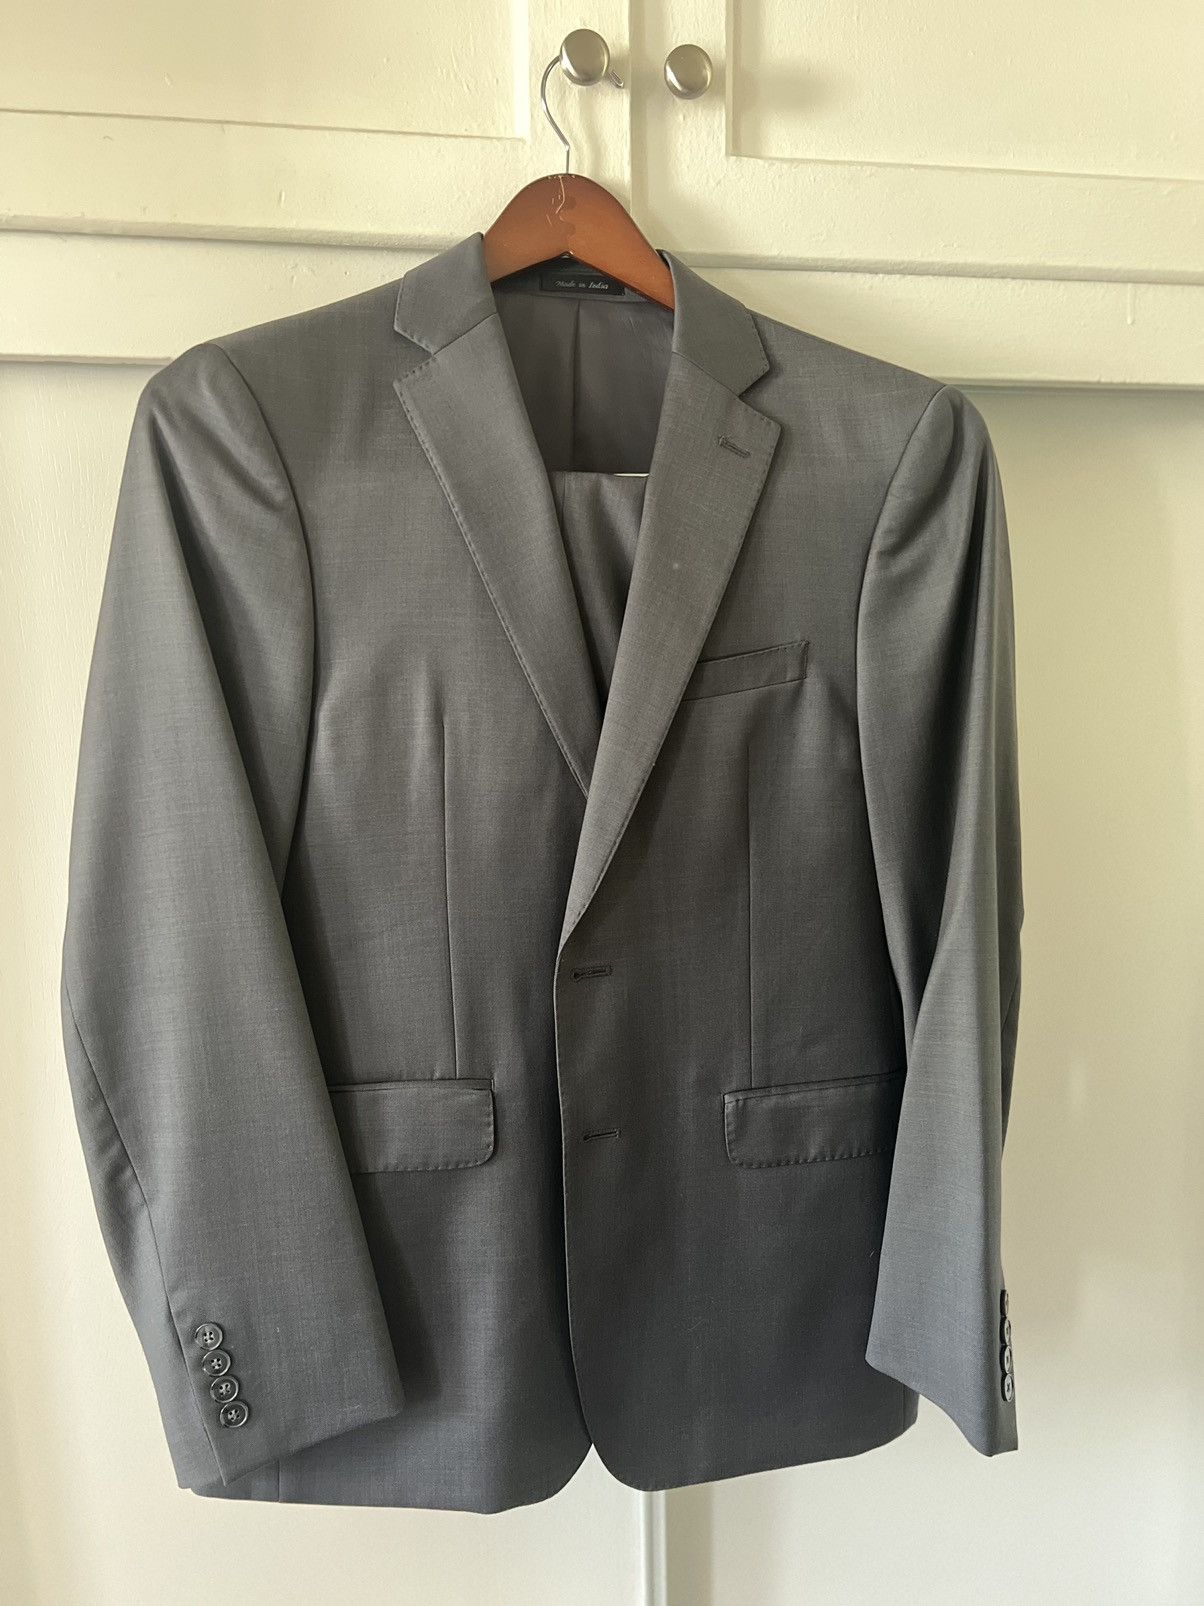 Calvin Klein Dark grey Calvin kleins Mens suit | Grailed